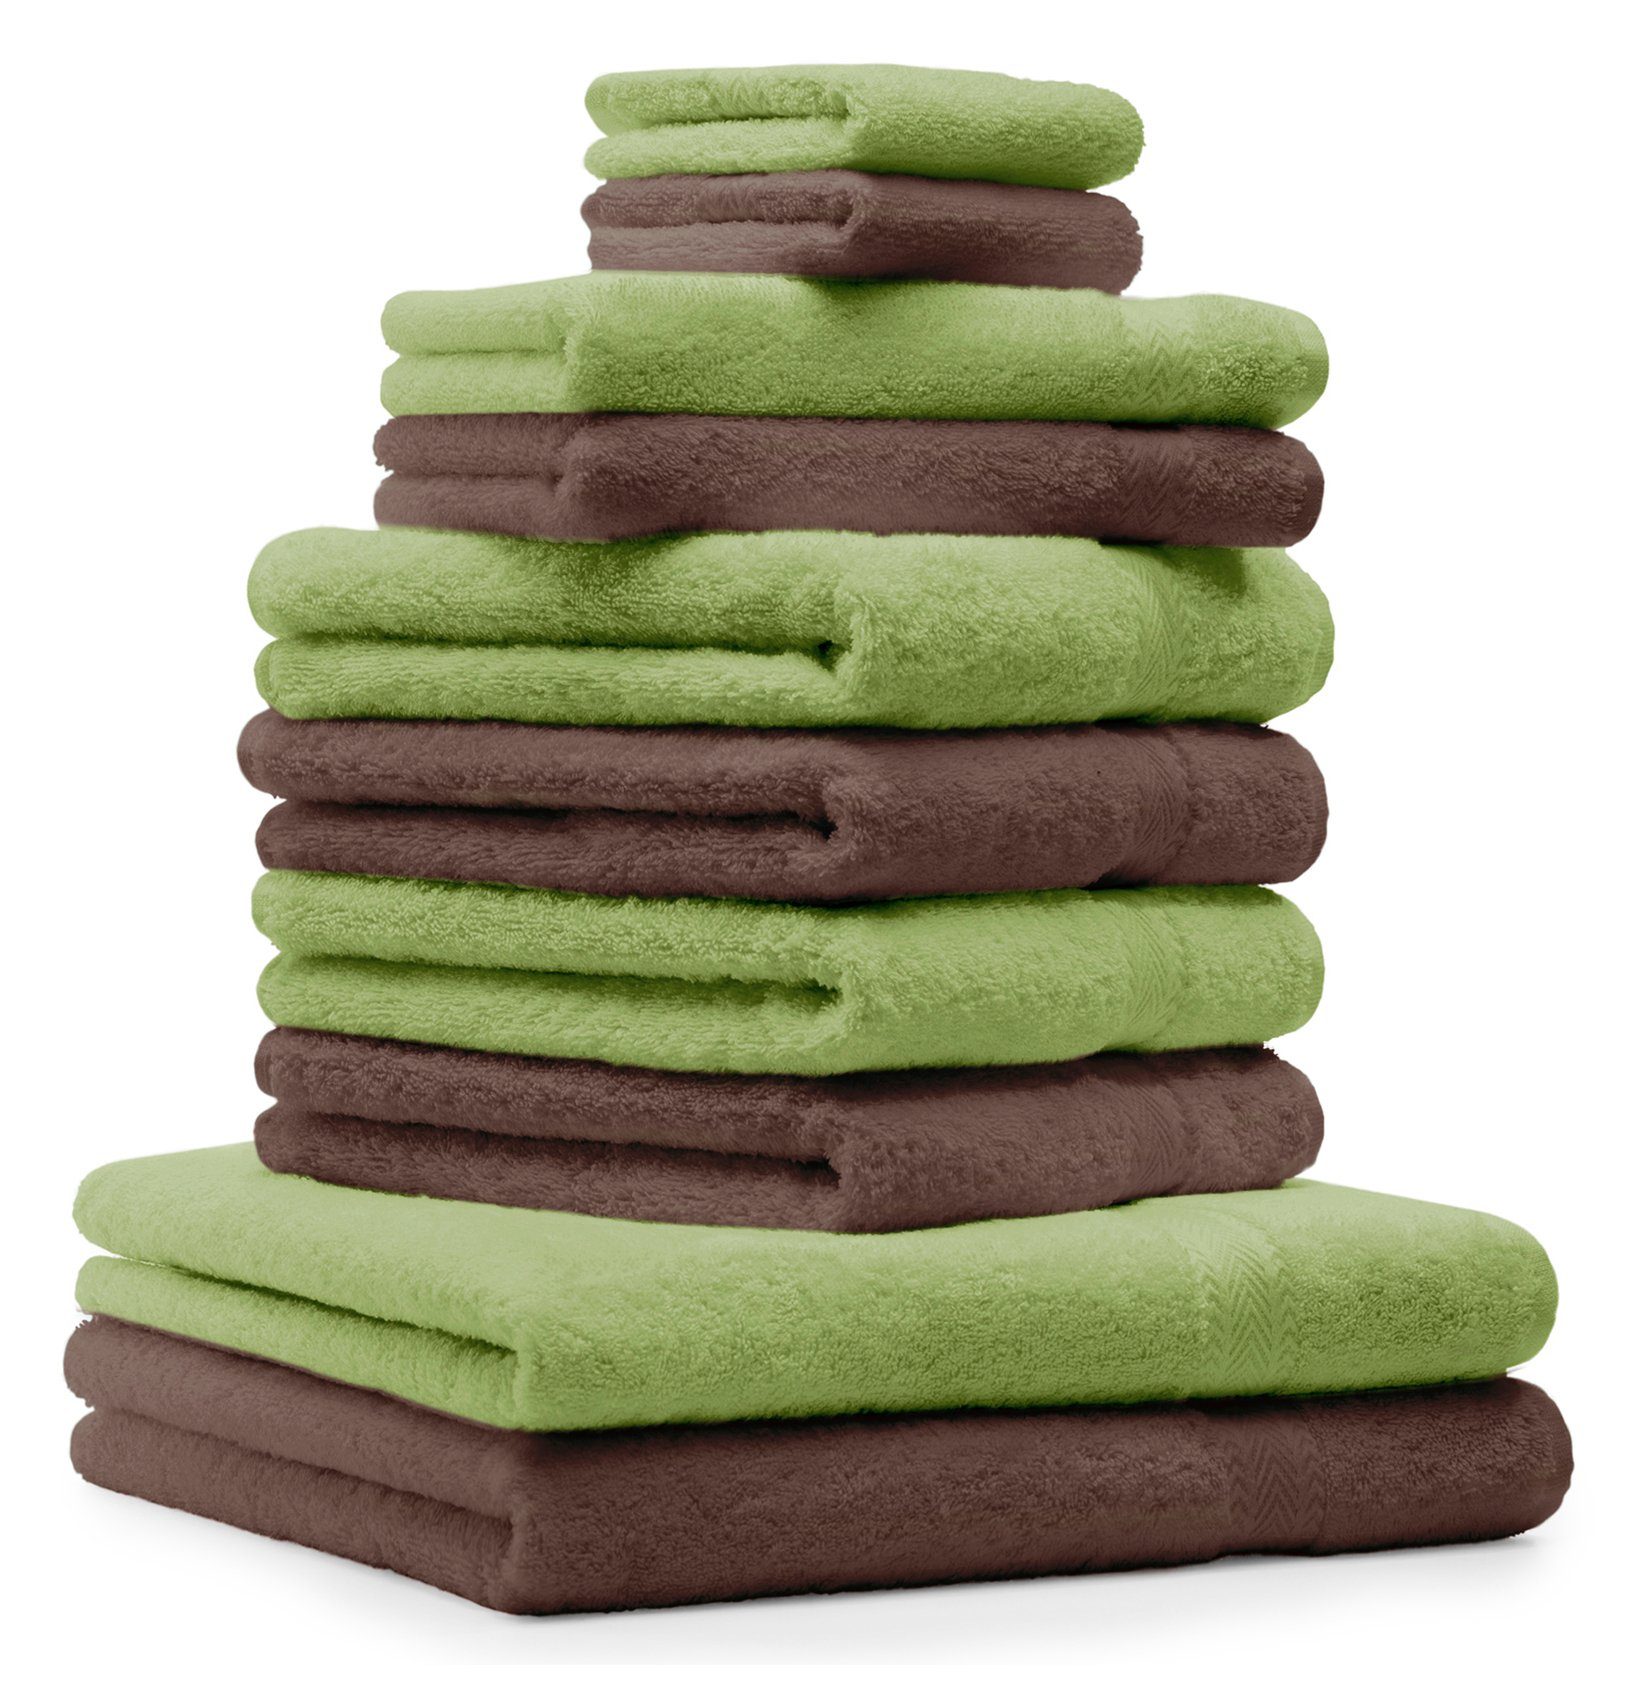 Betz Handtuch Set 10-TLG. Handtücher-Set Classic Farbe apfelgrün und nussbraun, 100% Baumwolle | Handtuch-Sets